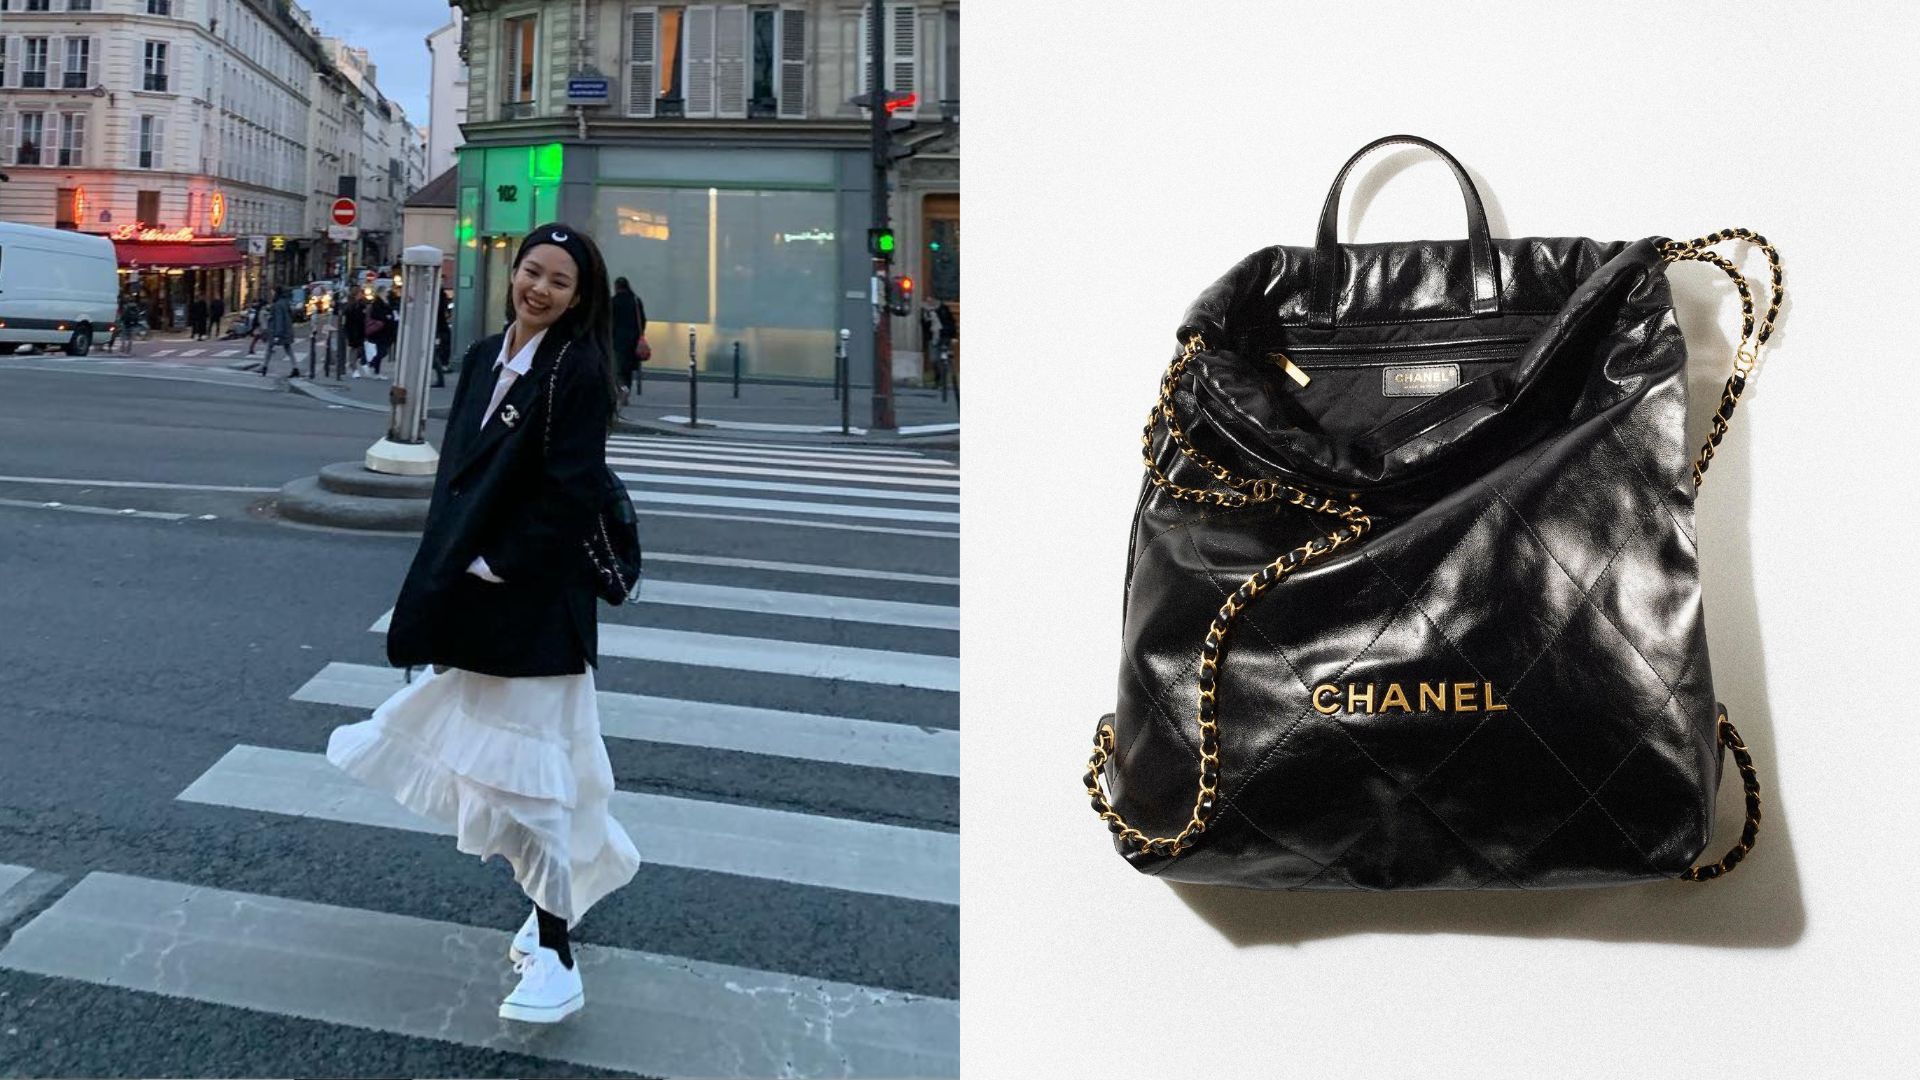 Chanel 19  IT bag đang làm chao đảo giới mê đồ hiệu từ Jennie Côn Lăng  đến loạt fashionista đều sở hữu ít nhất 1 em